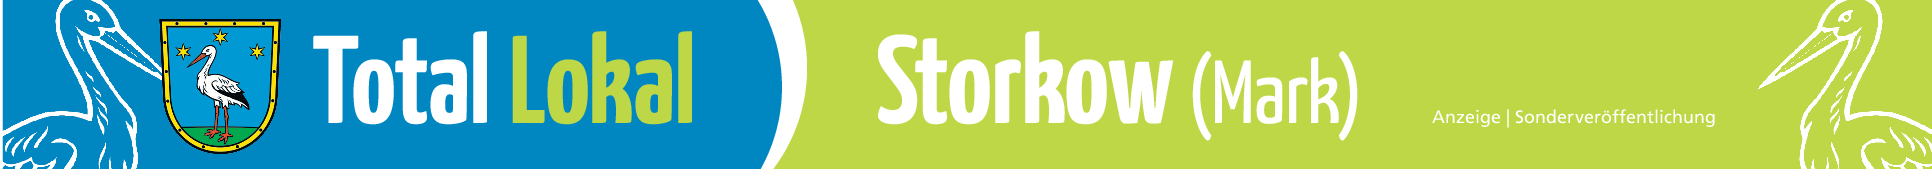 Stadt Storkow: Die Storchenstadt hat viel vor